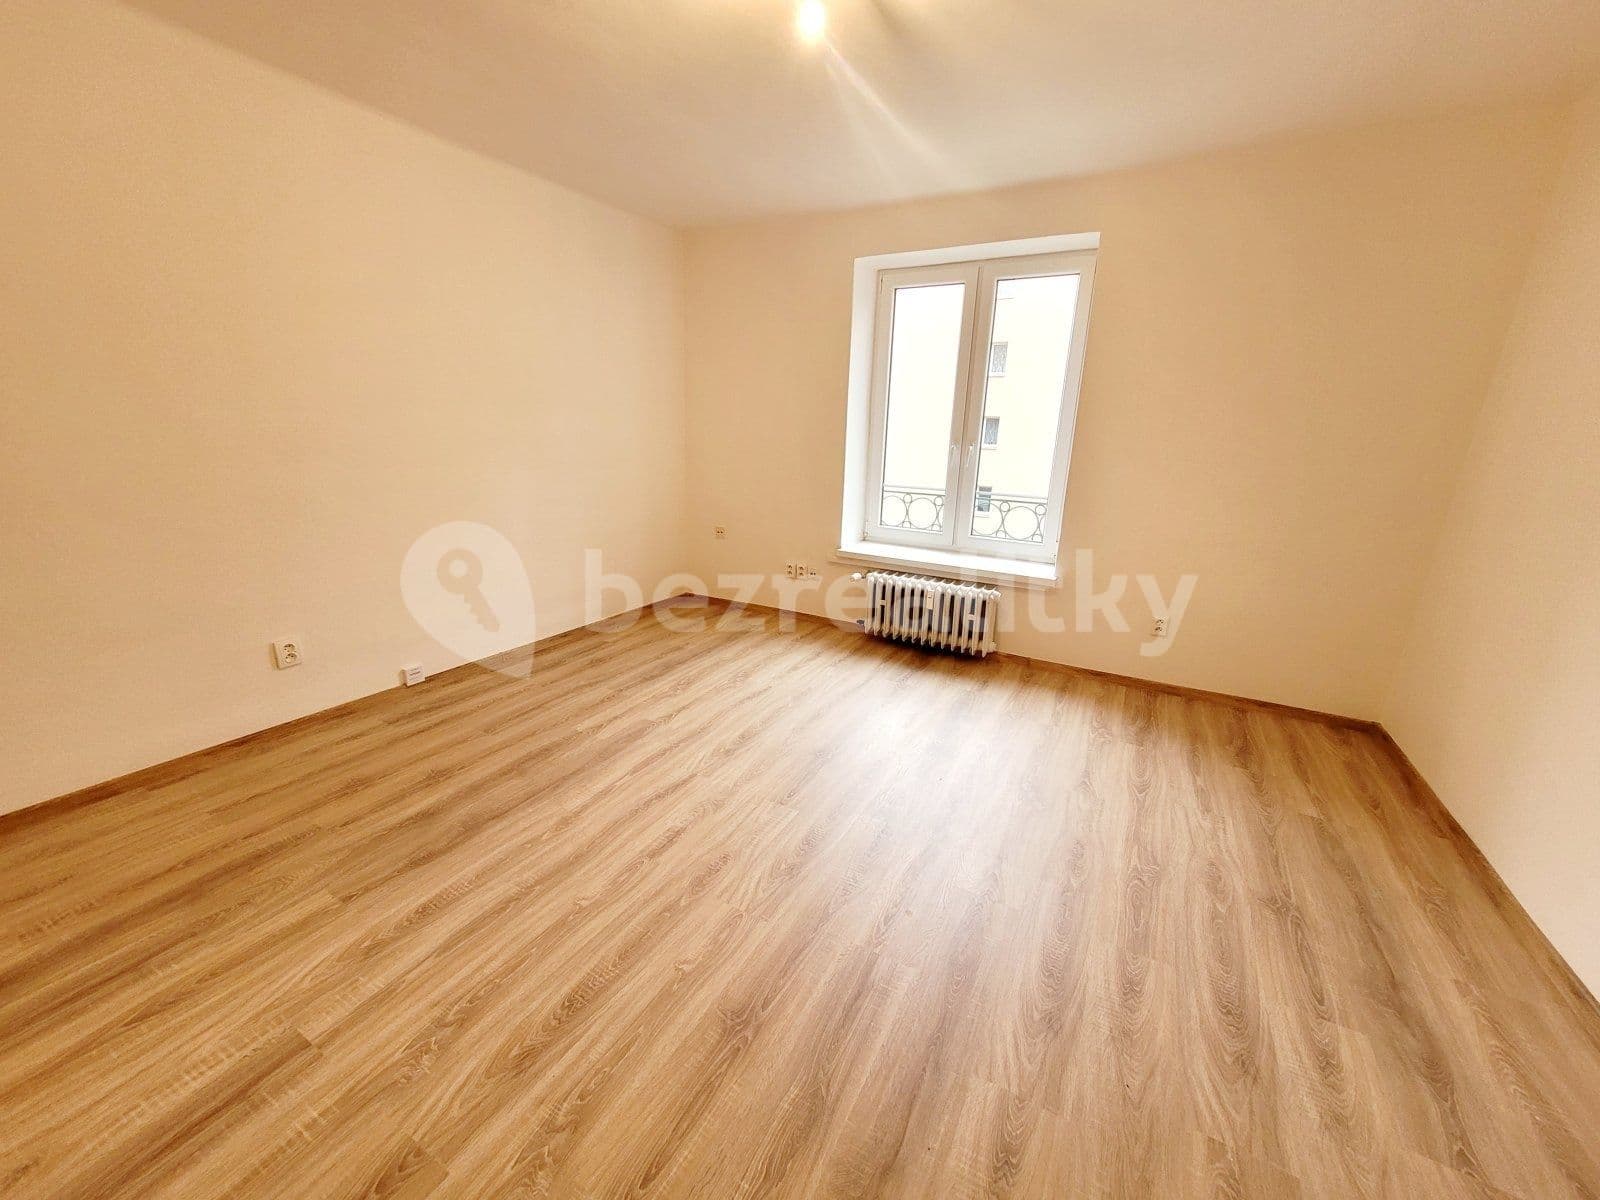 2 bedroom flat to rent, 56 m², Anglická, Havířov, Moravskoslezský Region